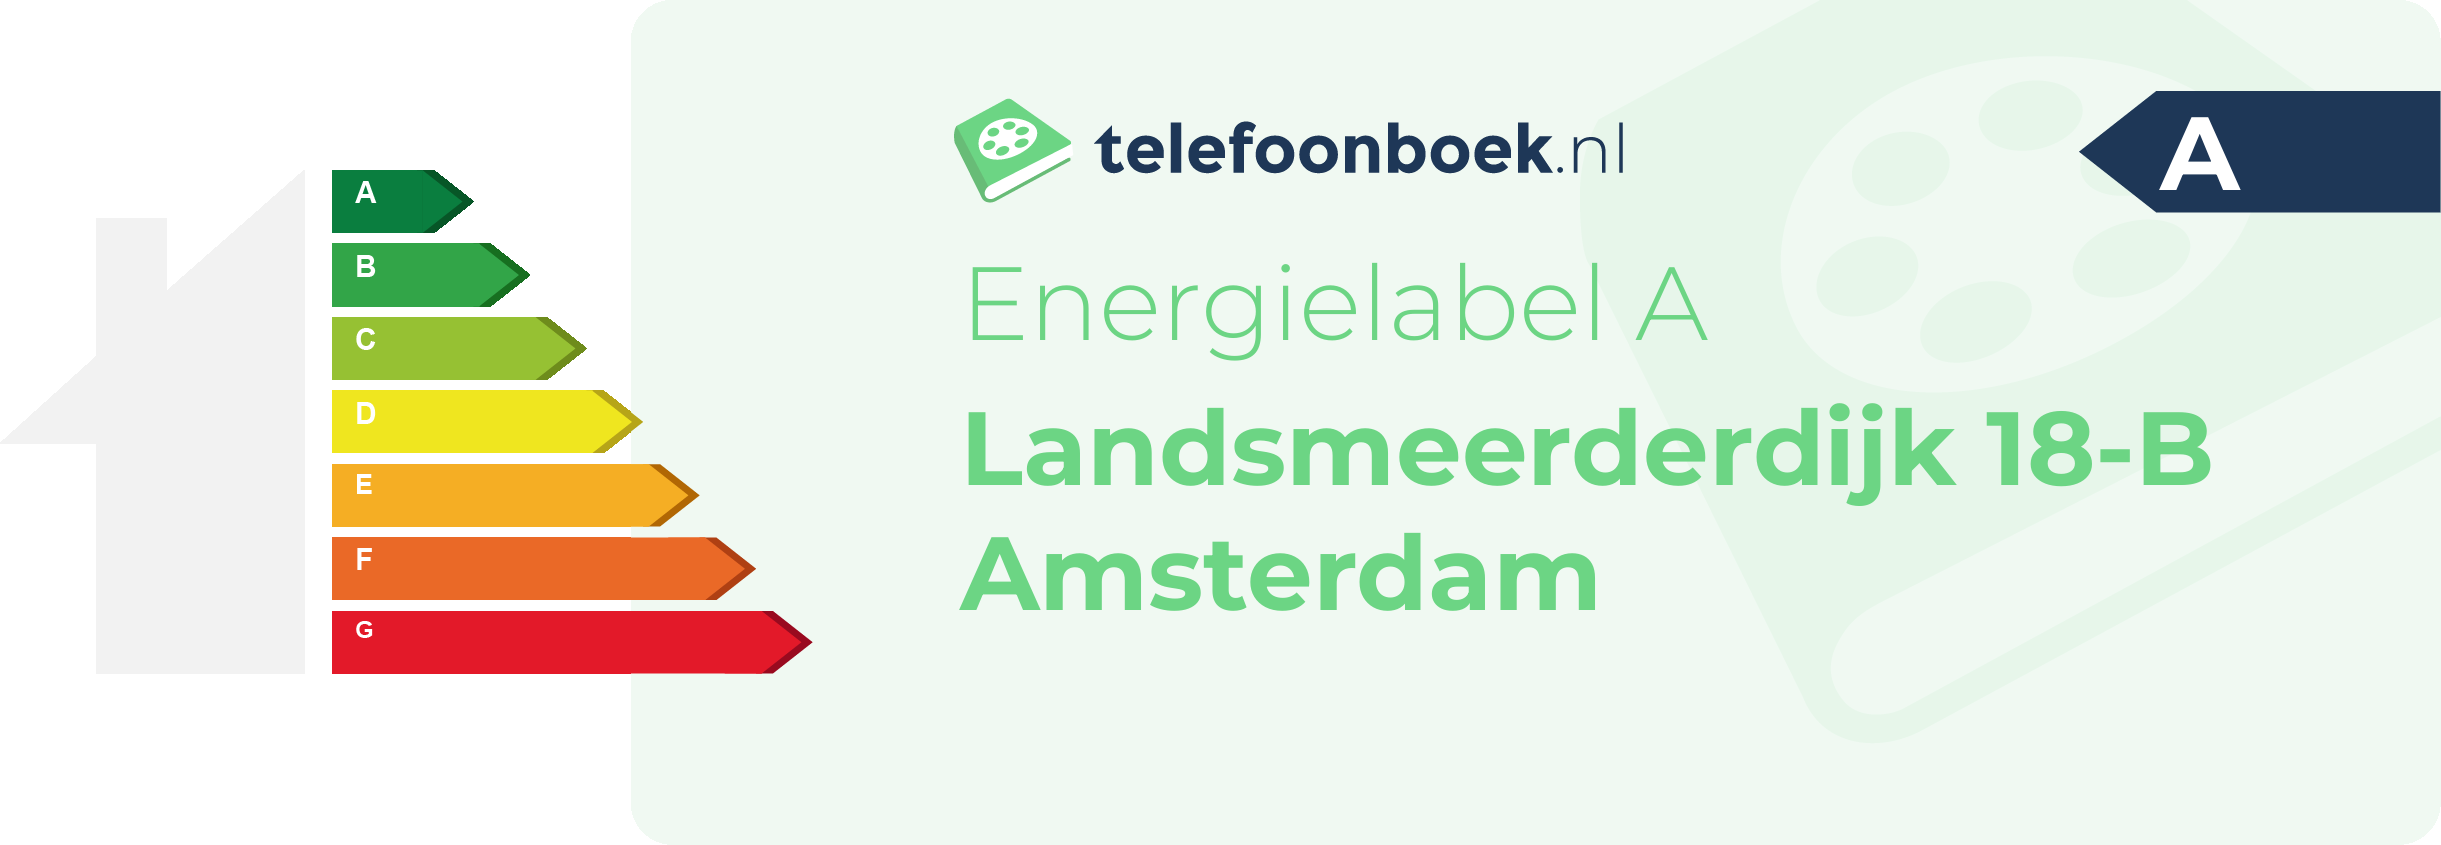 Energielabel Landsmeerderdijk 18-B Amsterdam